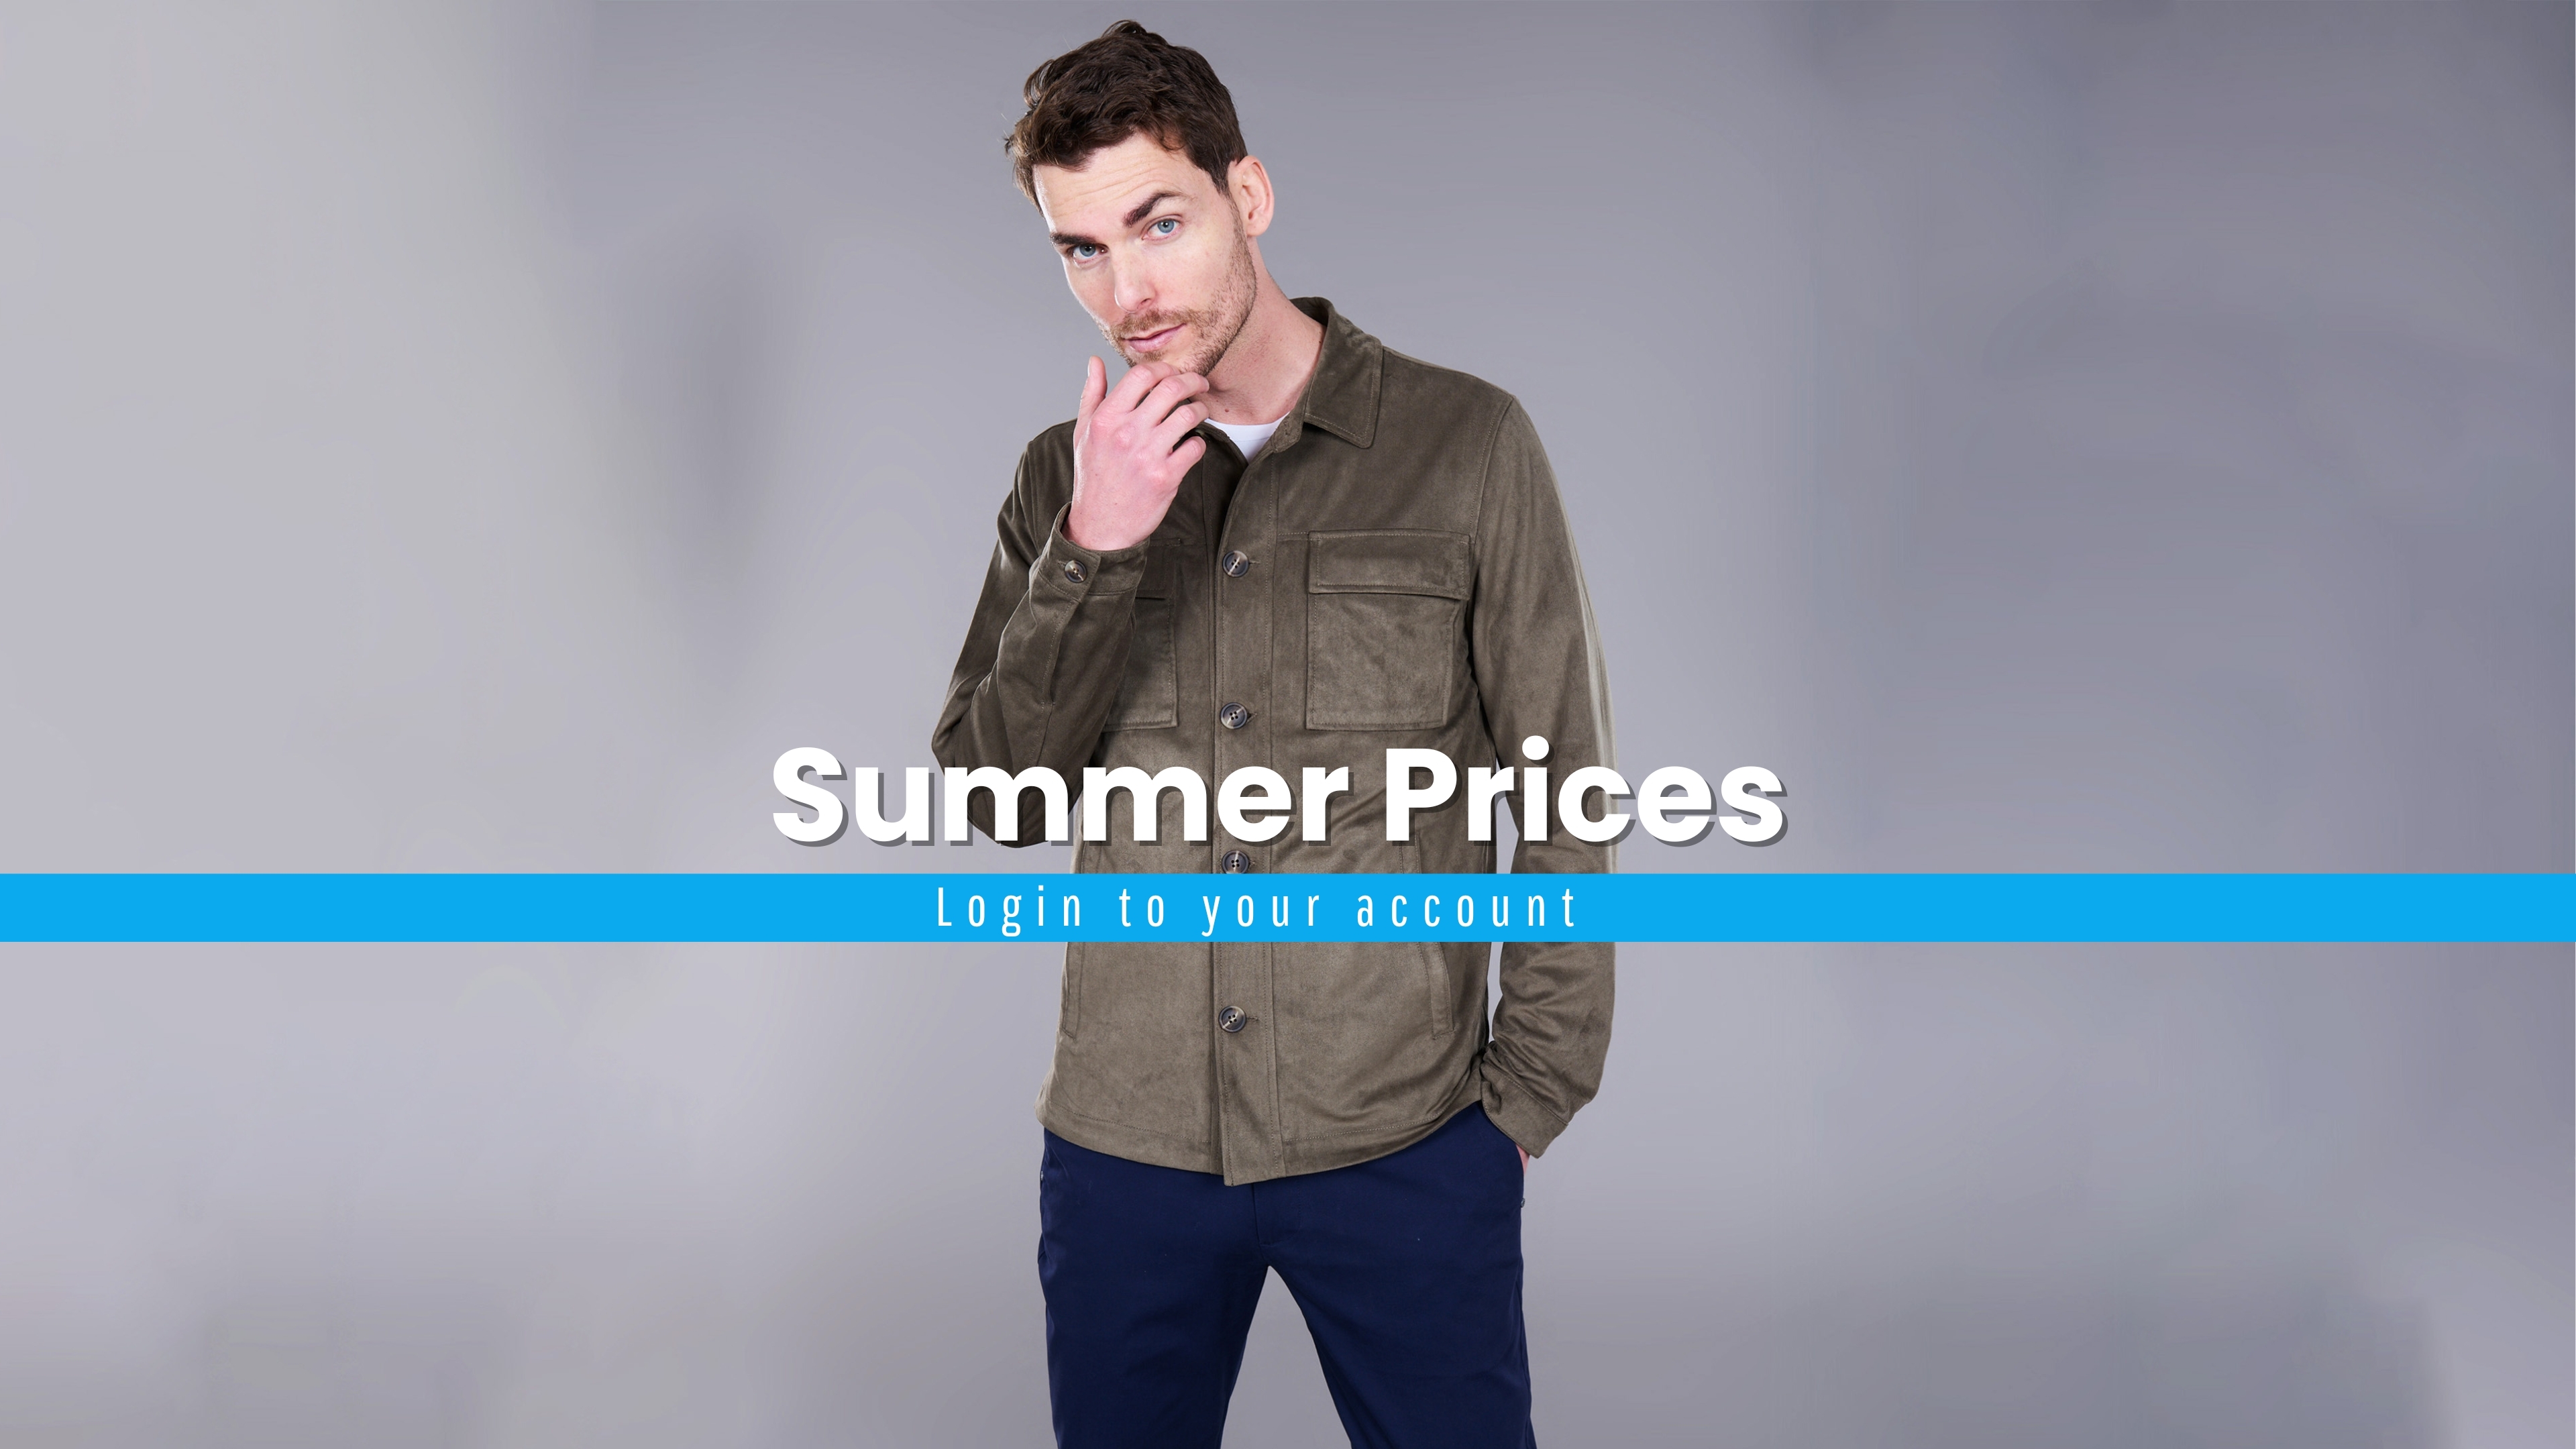 Summer Prices